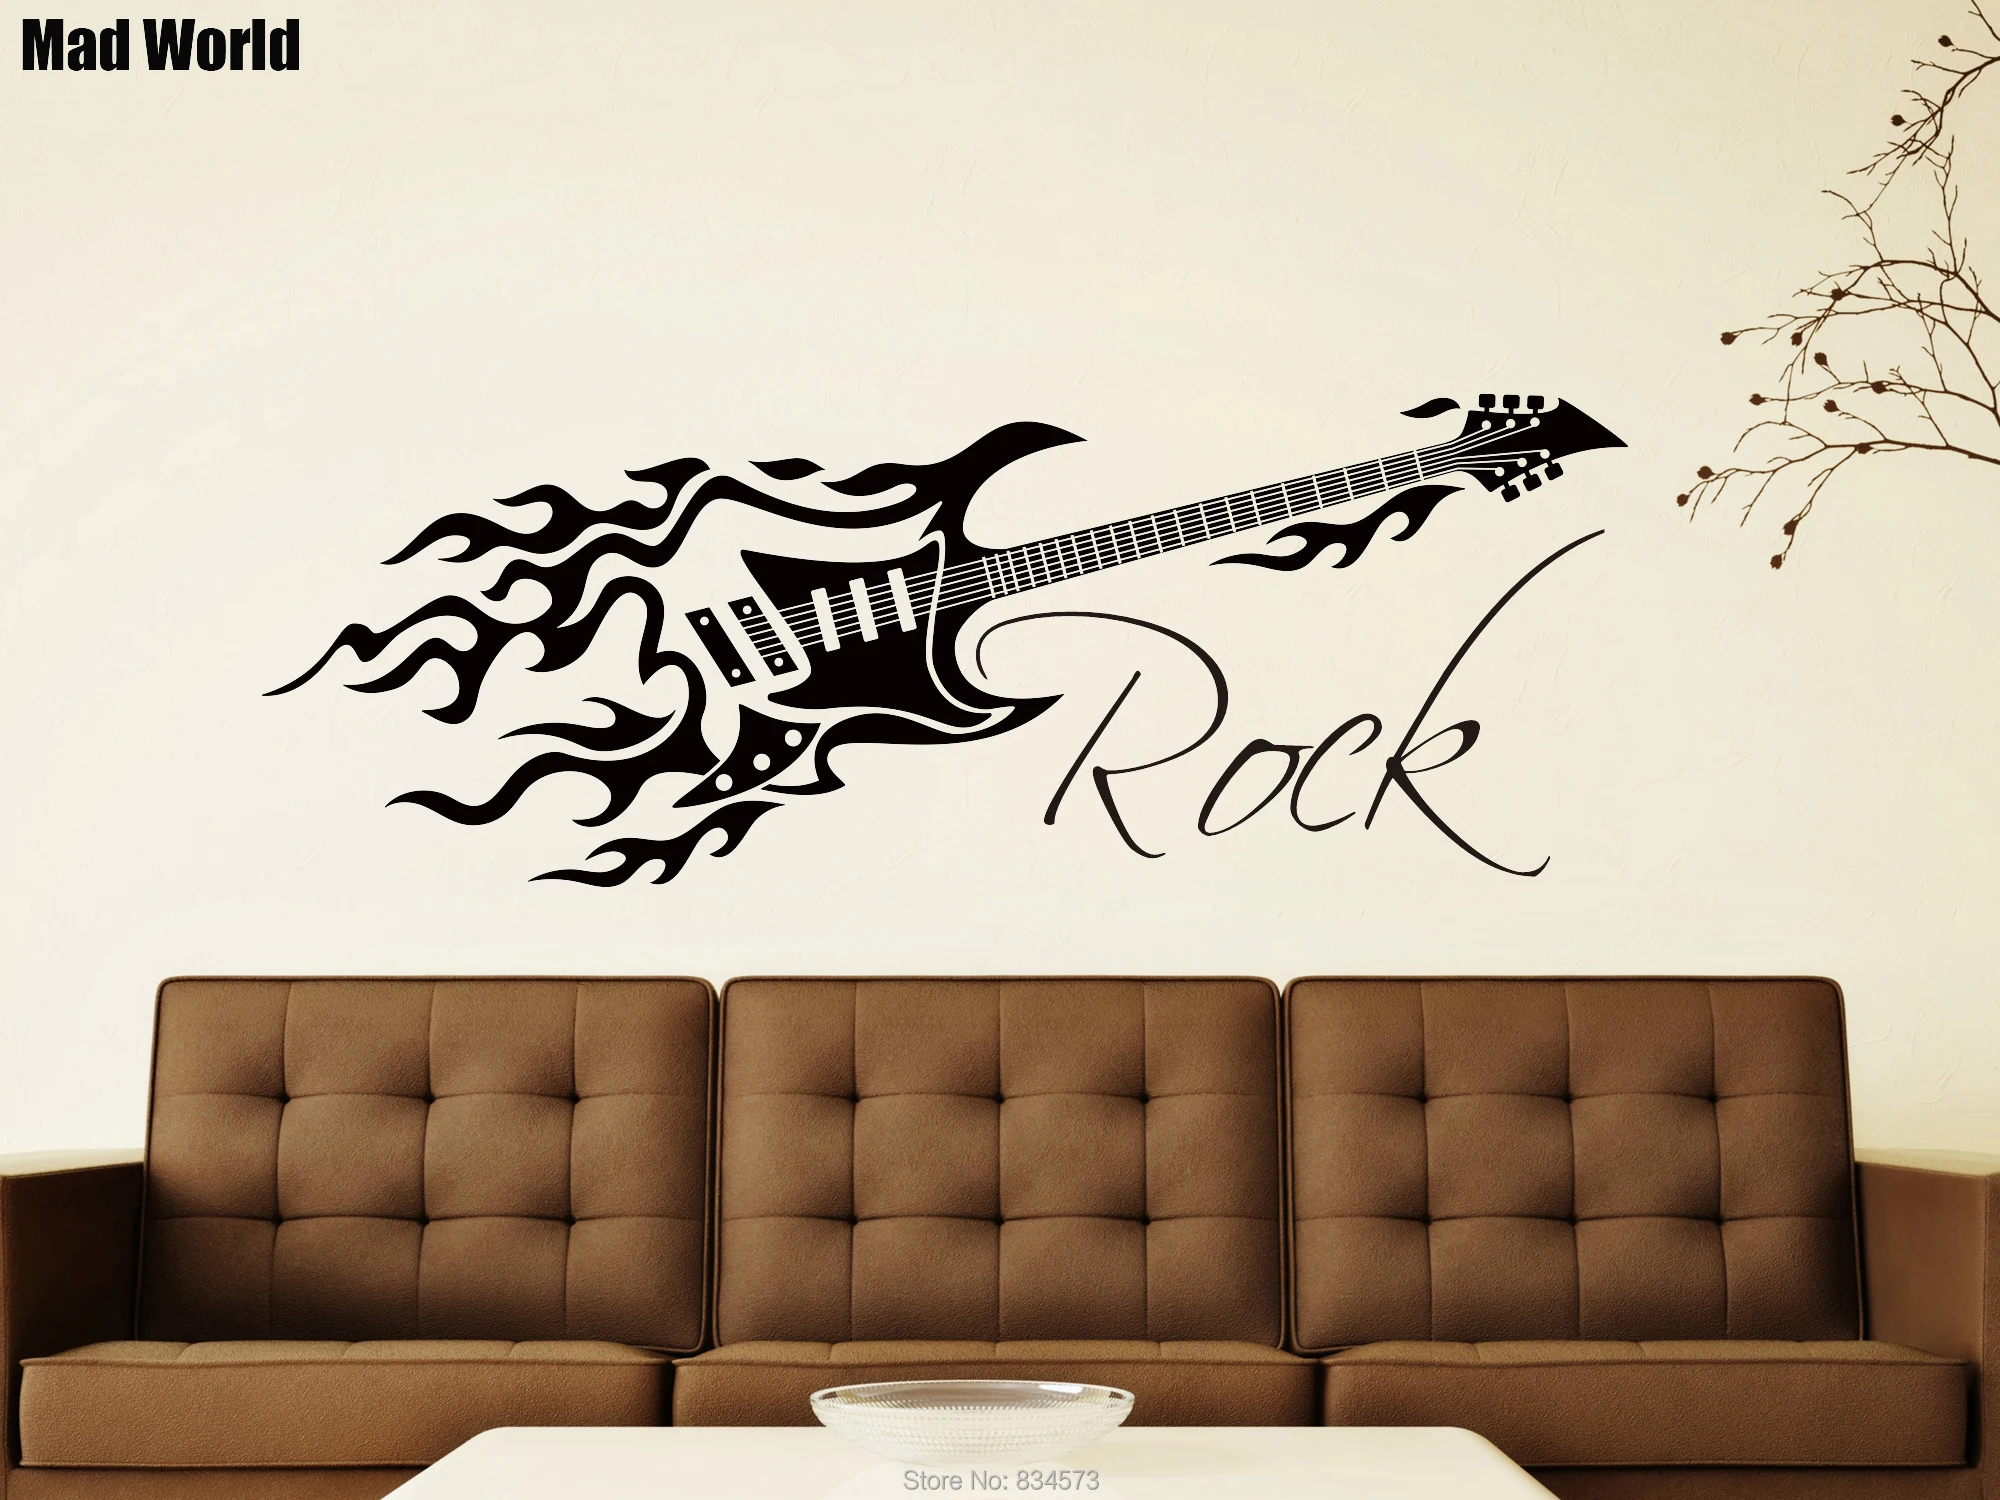 

Безумный мир-рок музыка гитара играть фоновая фотография в стиле ретро Art наклейки настенные наклейки на стены дома DIY украшения Съемный Дек...